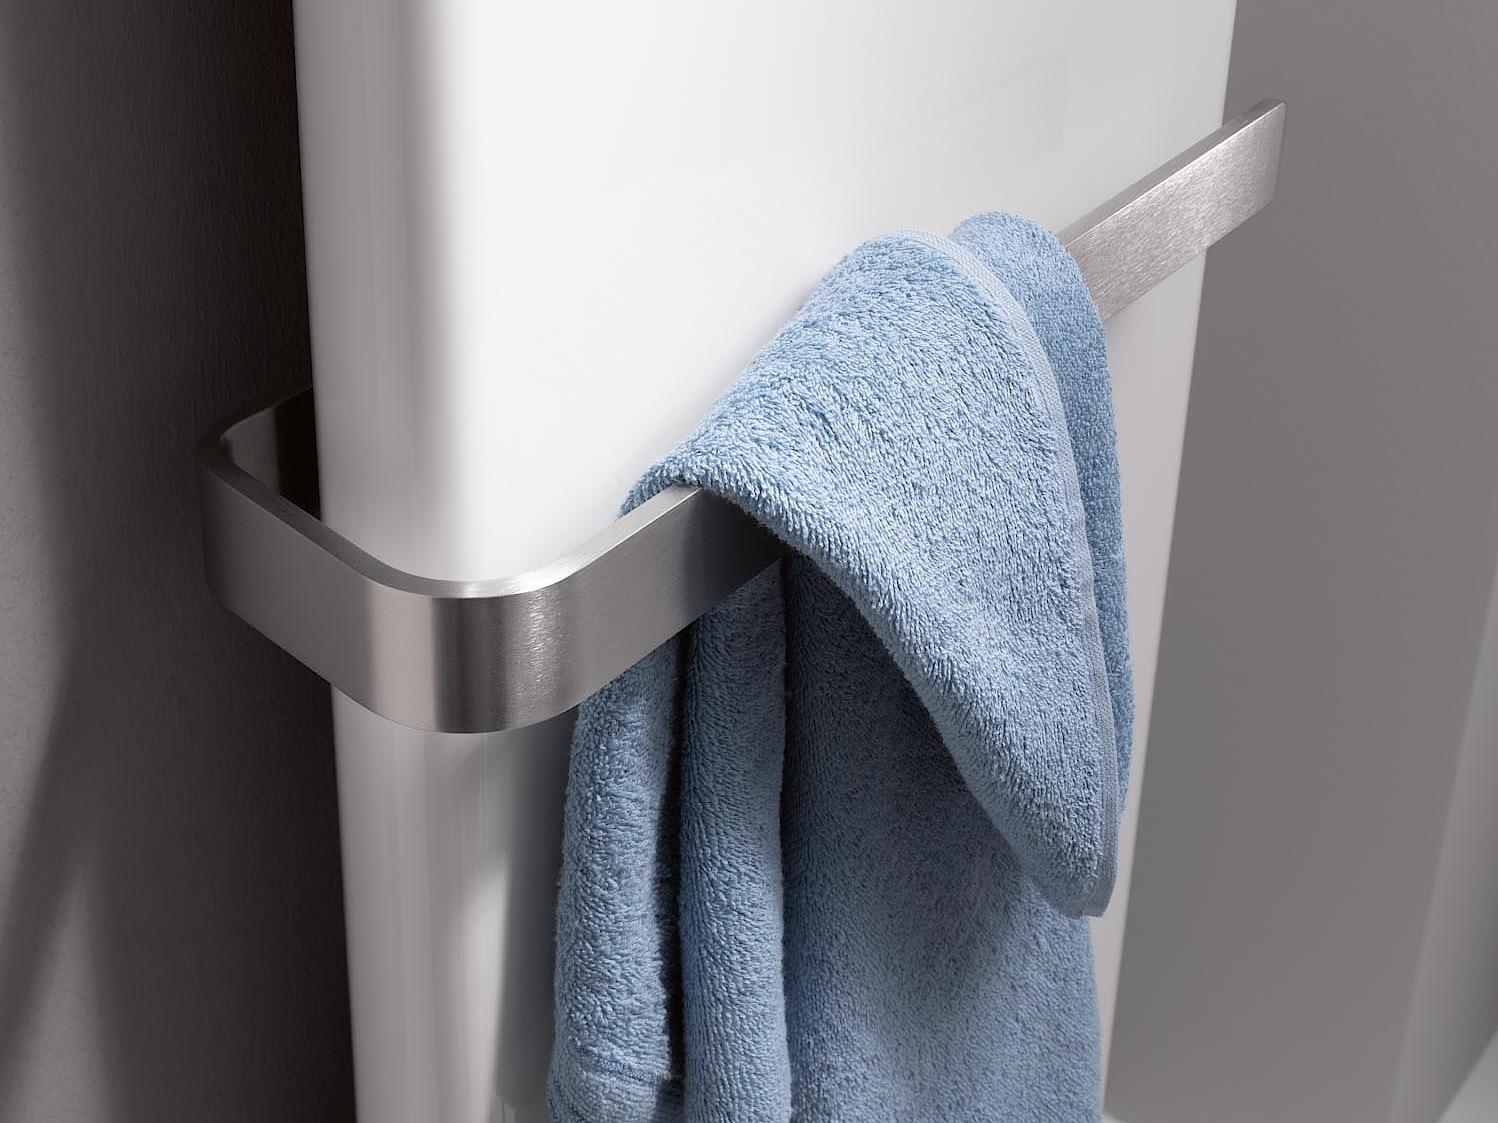 Radiatore da bagno e di design Kermi Pateo staffa per asciugamani acciaio inox spazzolato.